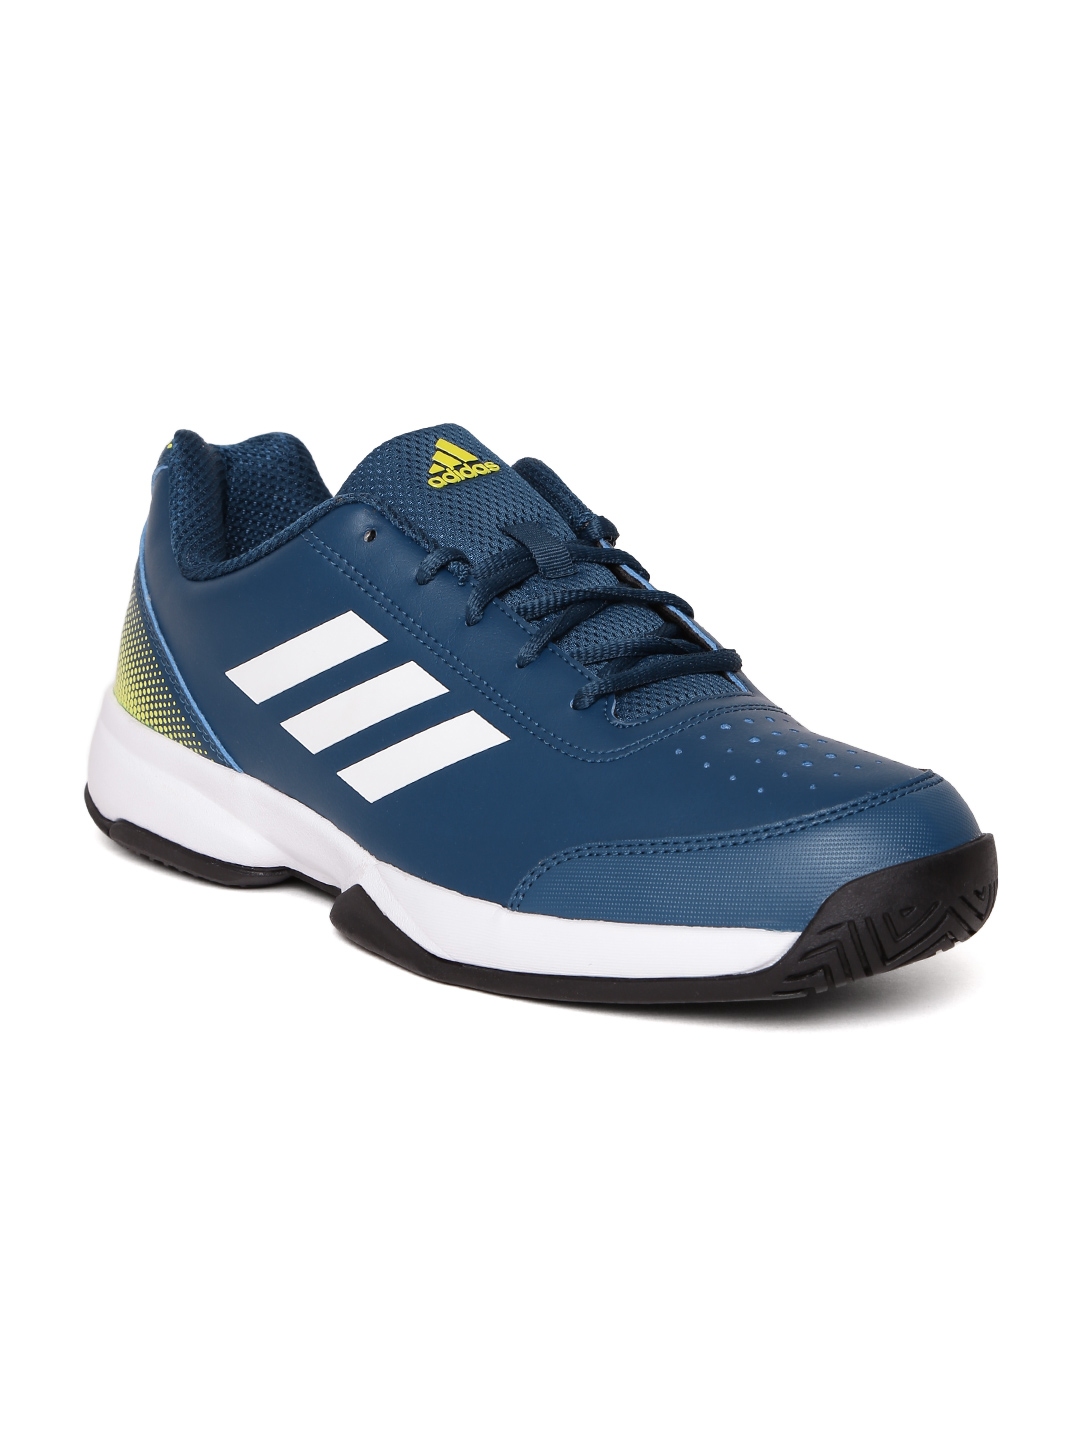 Buy ADIDAS Men Blue Racquettes Tennis Shoes - Sports Shoes for Men